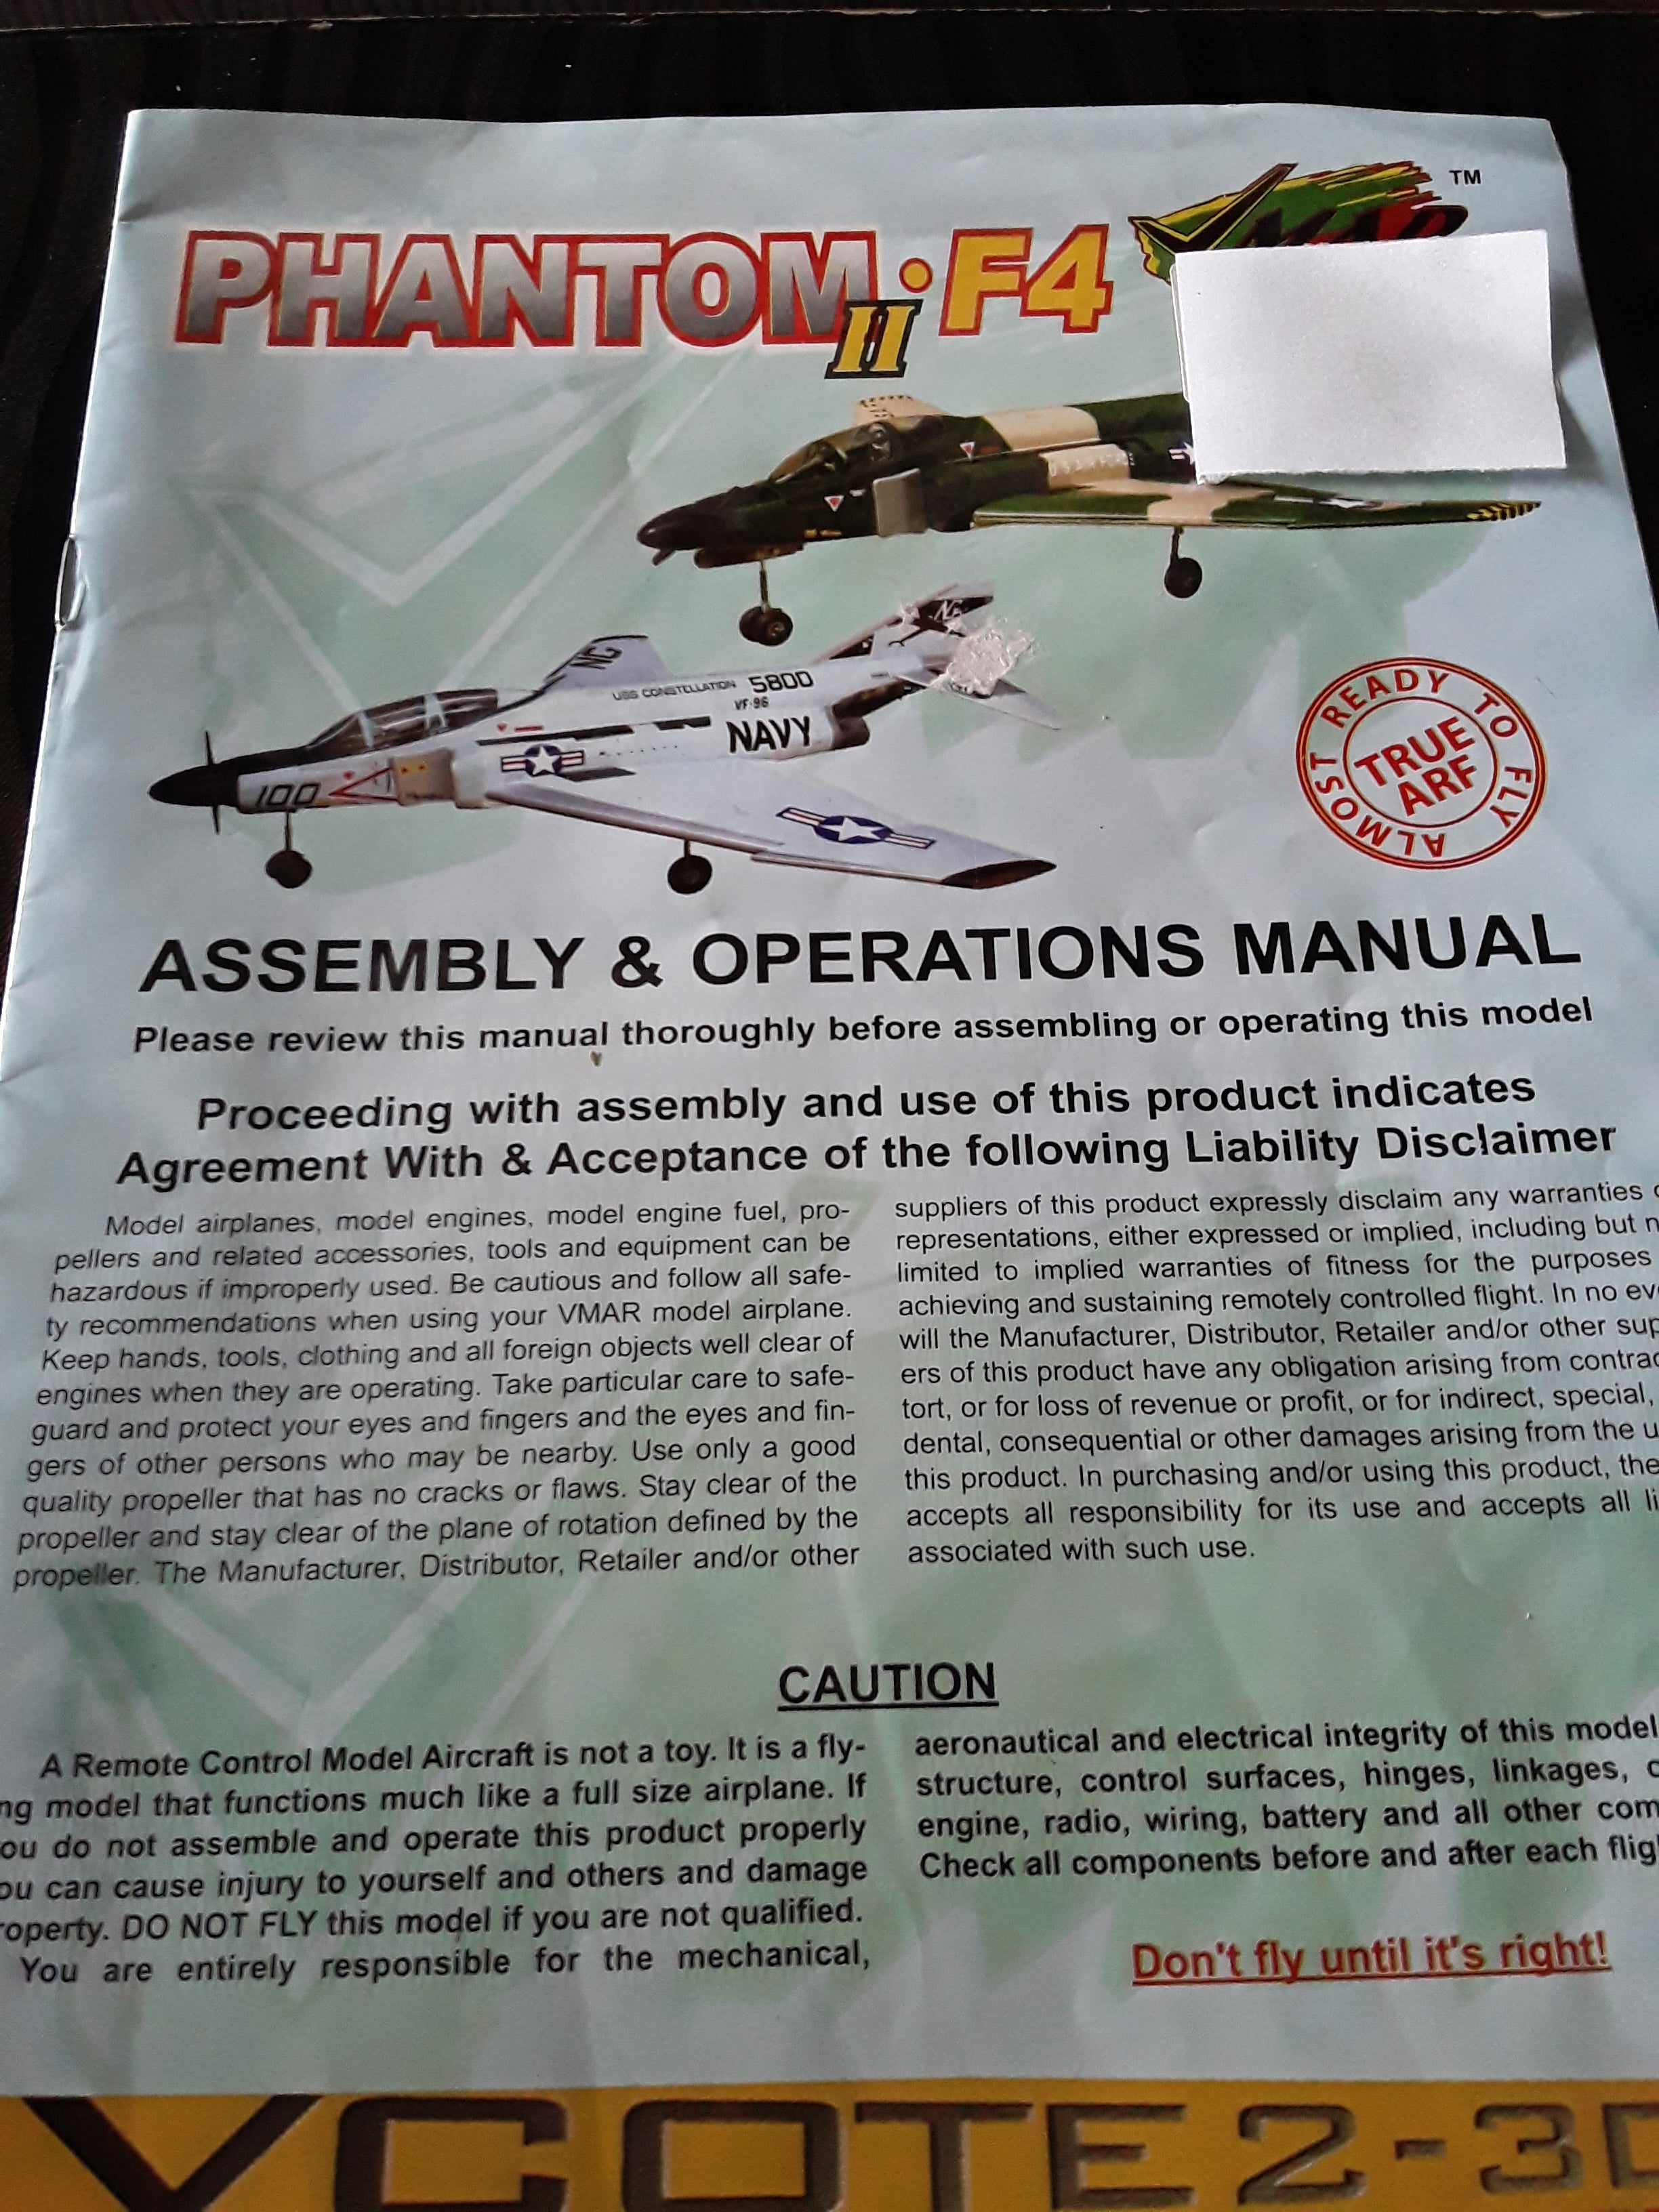 ASSEMBLY & OPERATION MANUAL OF PHANTON 11 F4